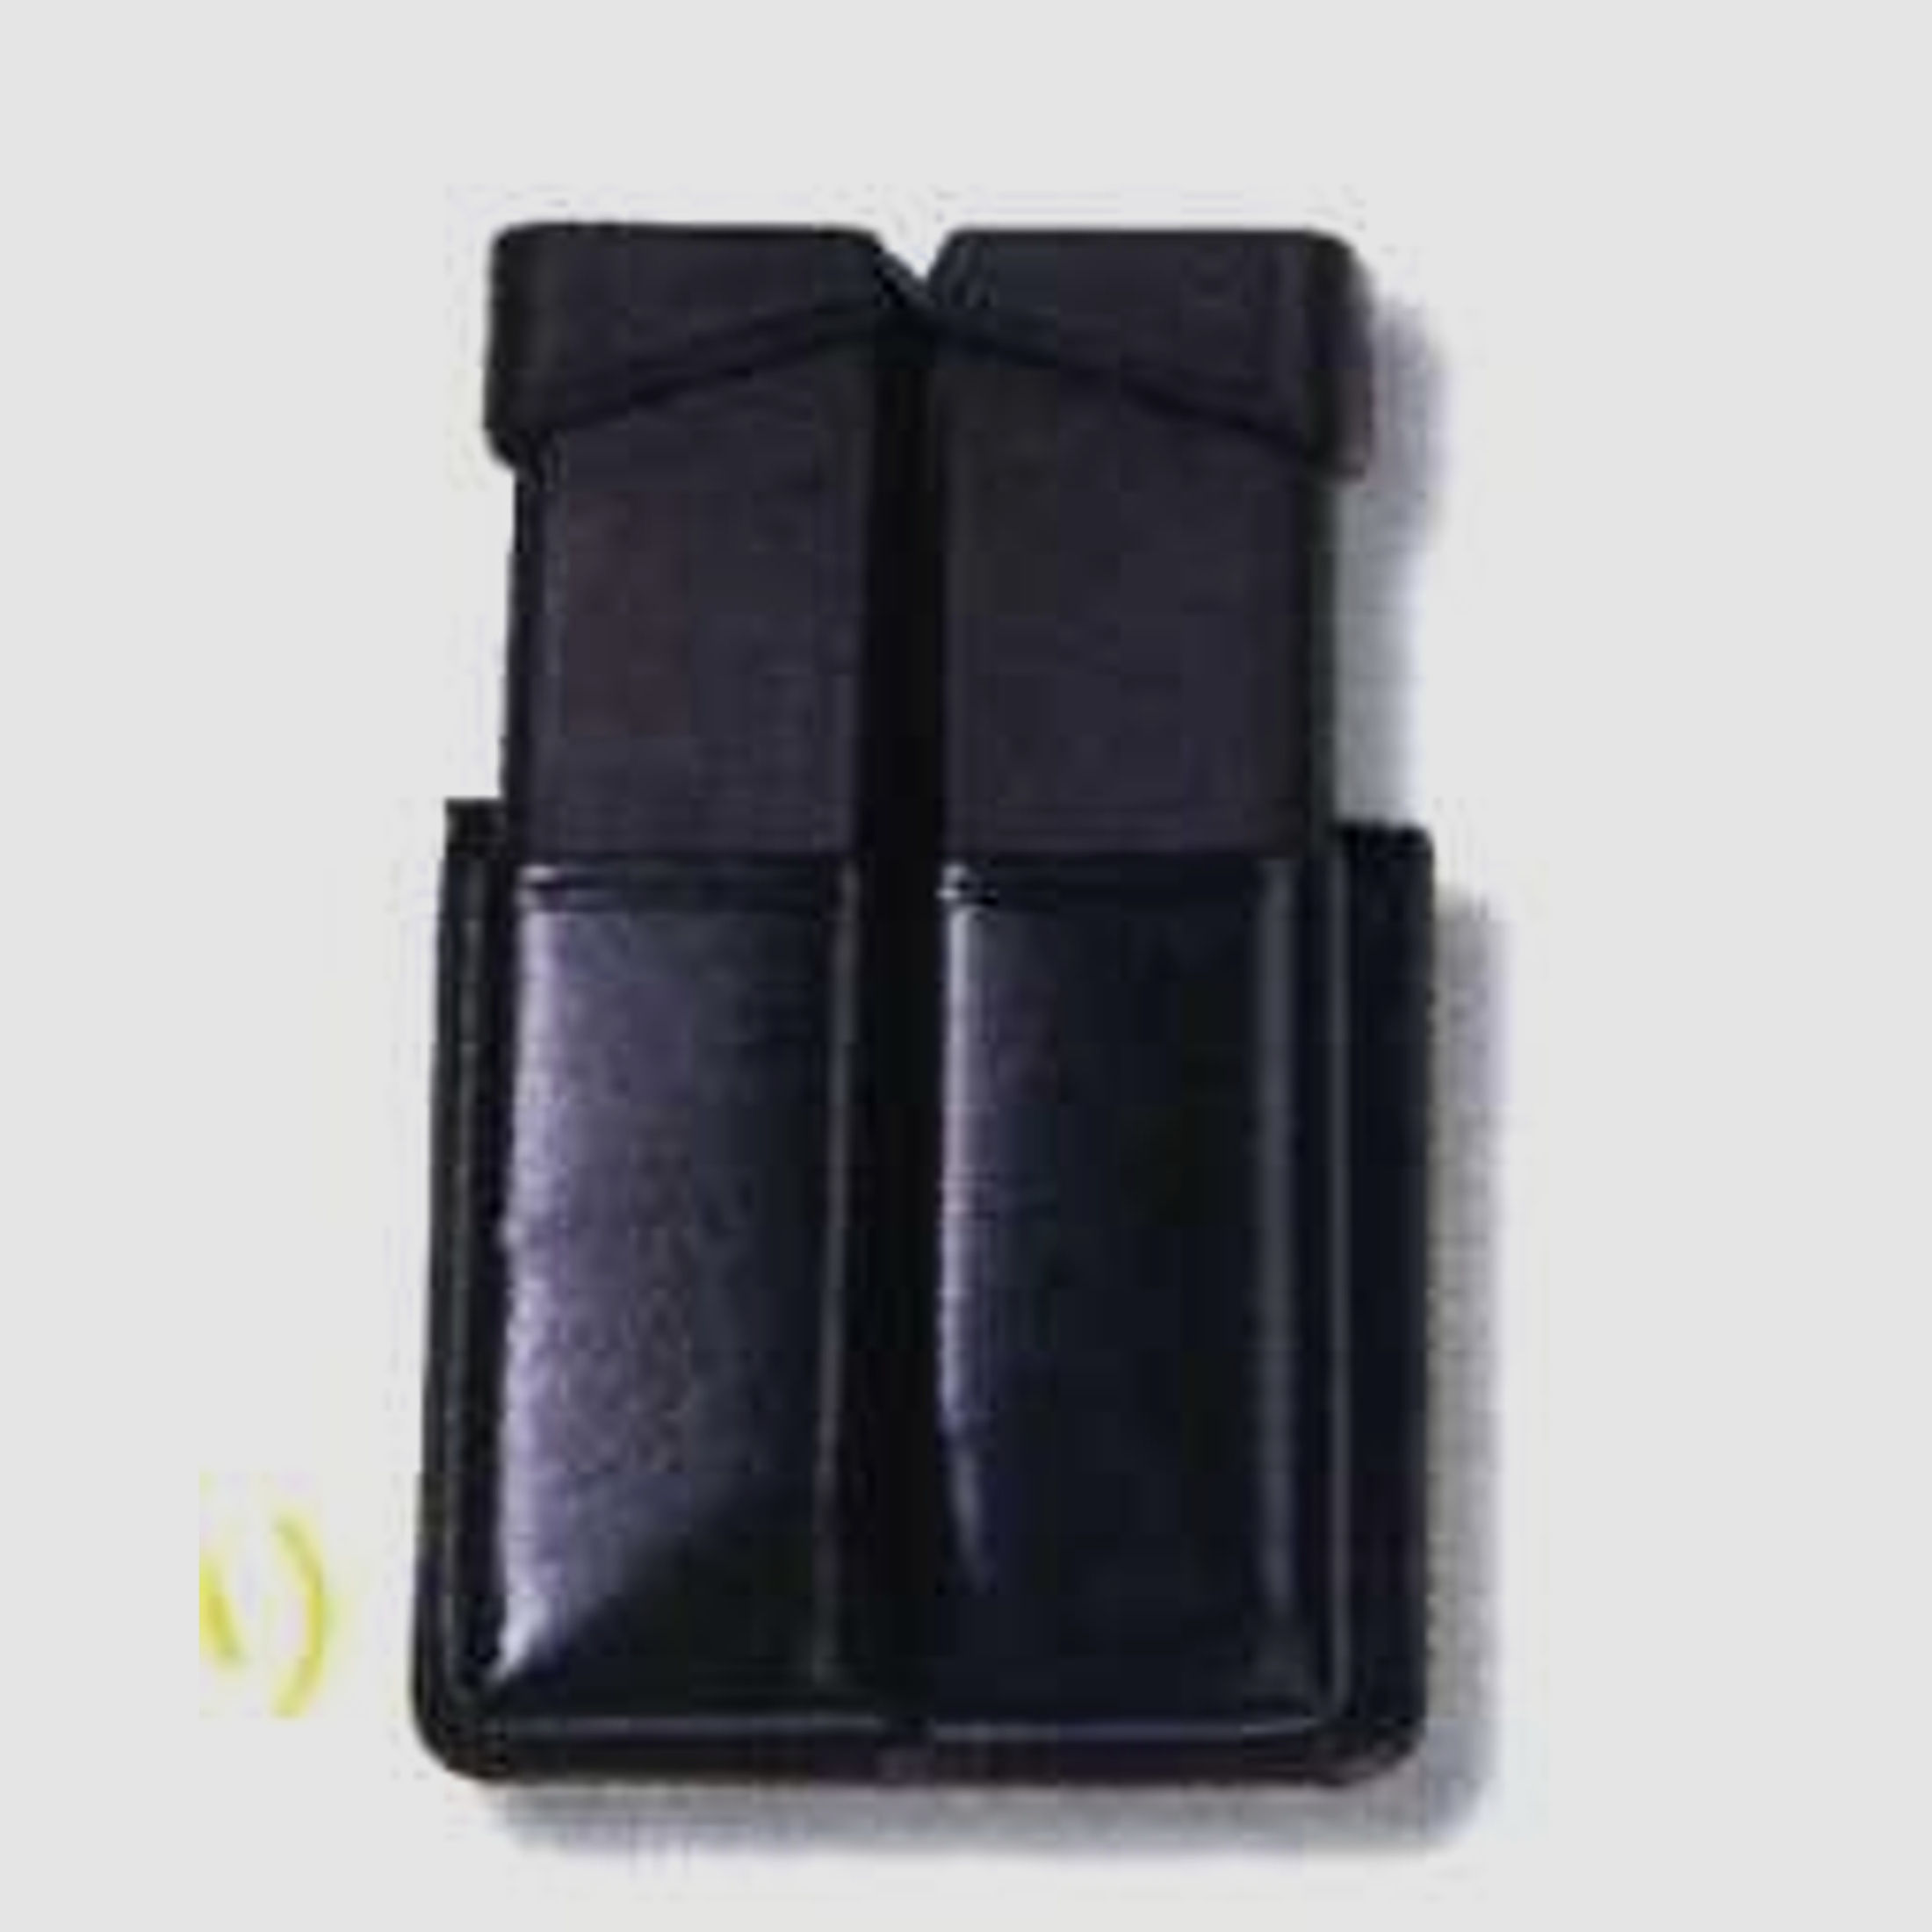 SICKINGER Magazintasche 45 einreihig doppelt schwarz 62822 Twin Box